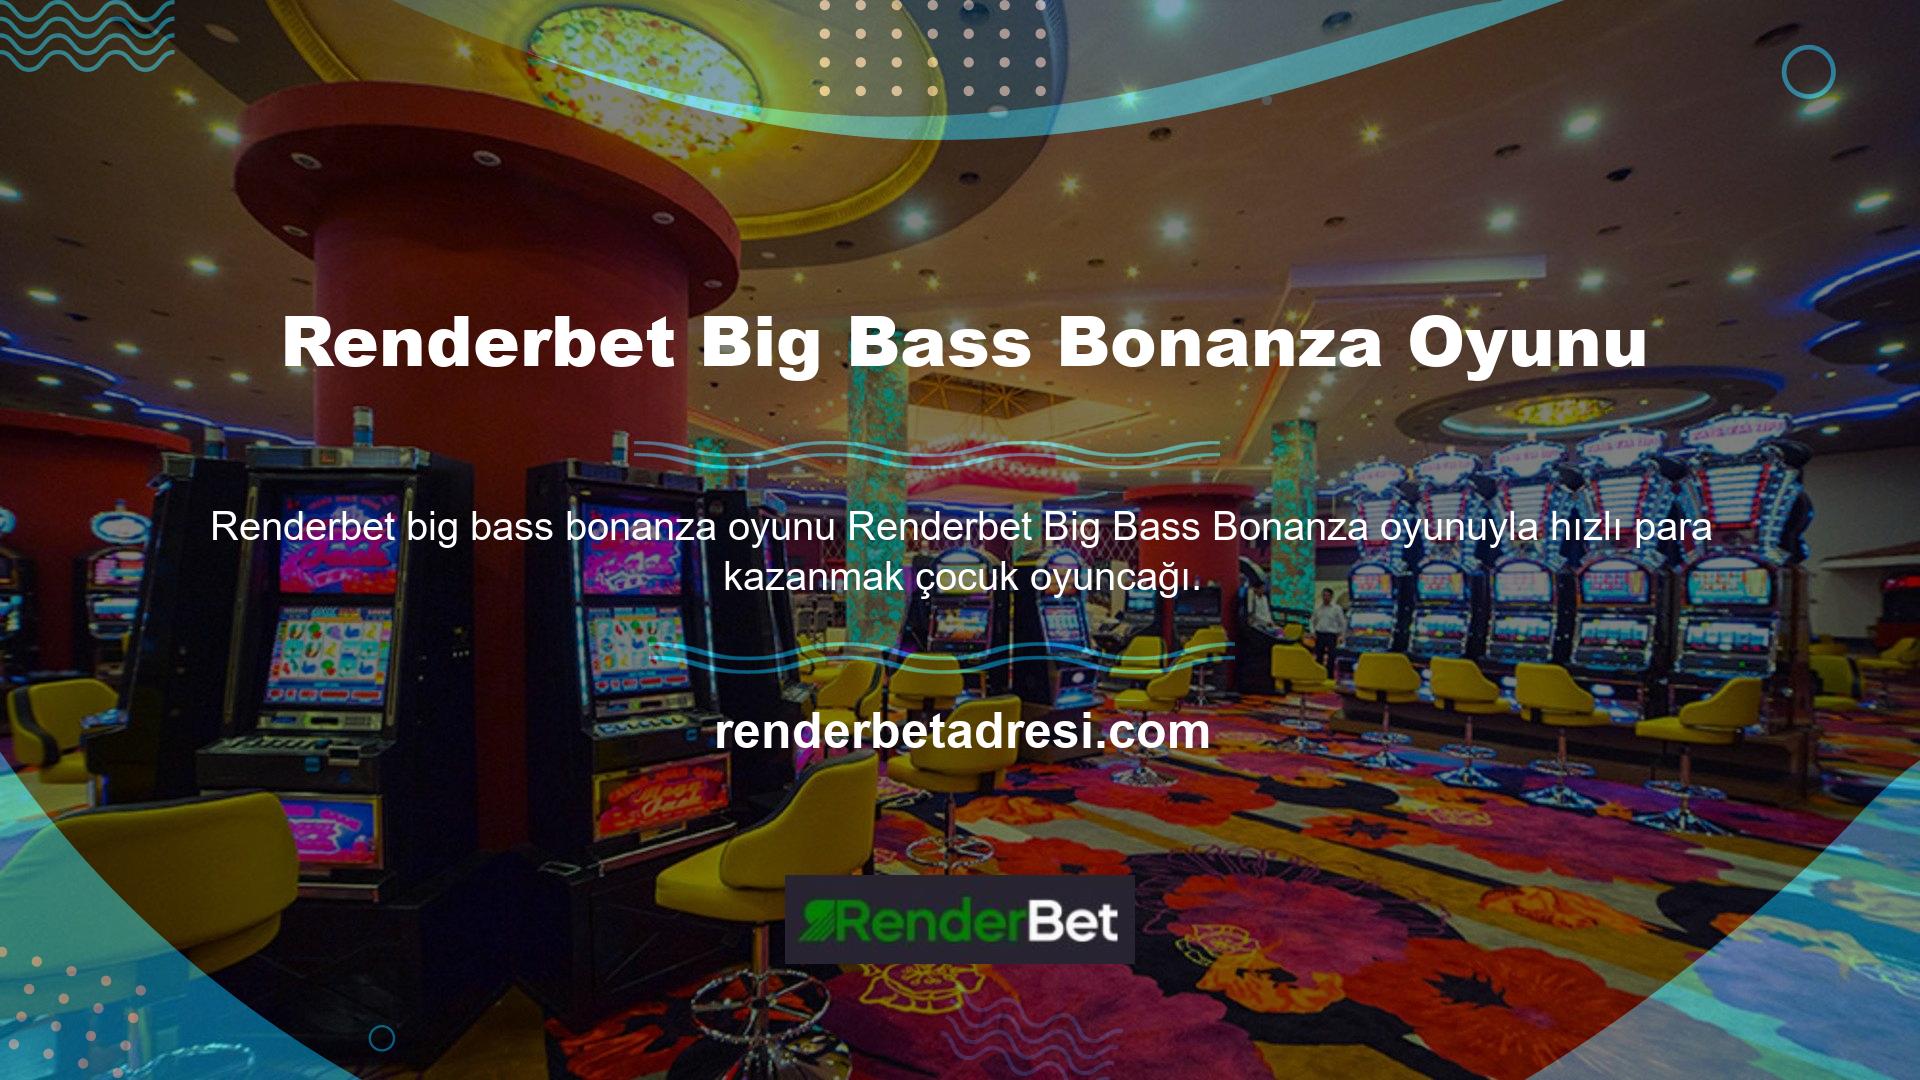 Renderbet Big Bass Bonanza oyunu aslında basittir